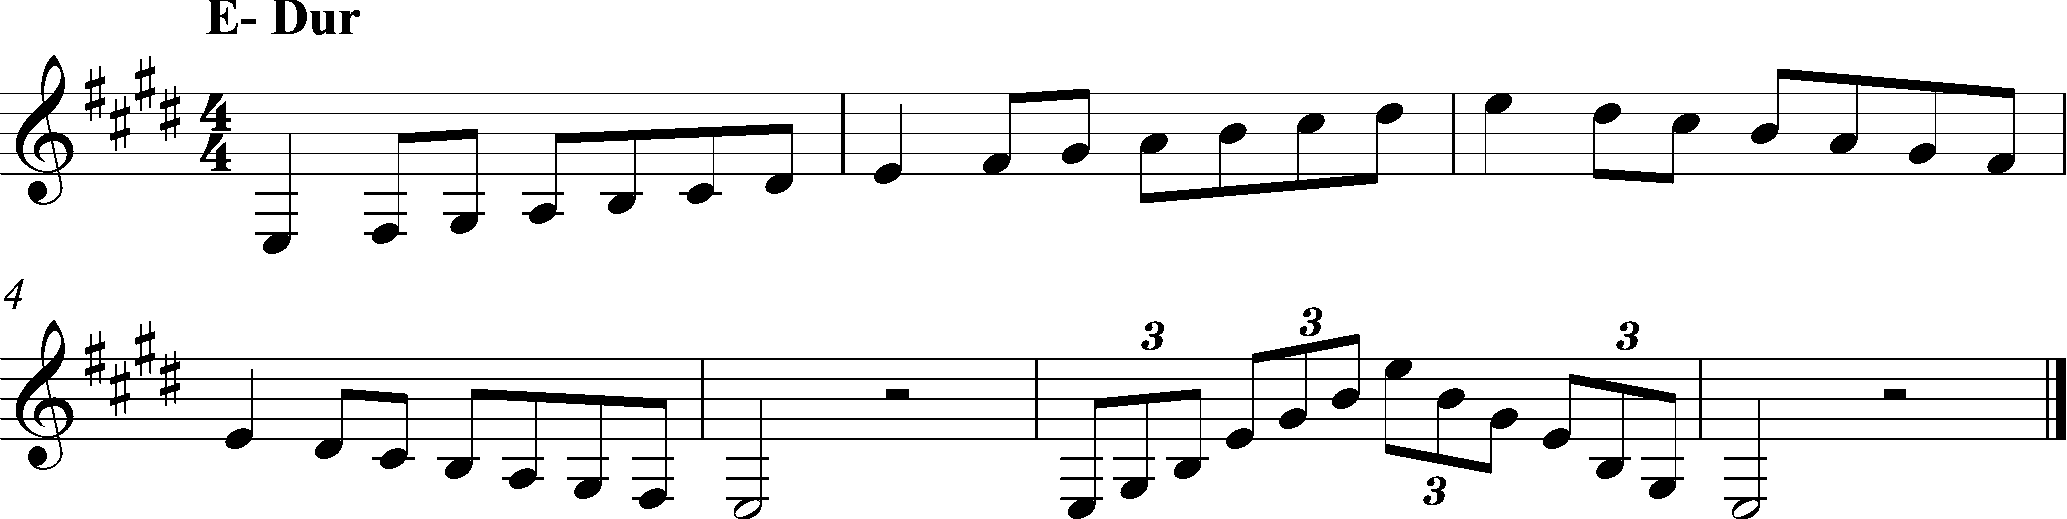 E-Dur, Tonleiter Klarinette